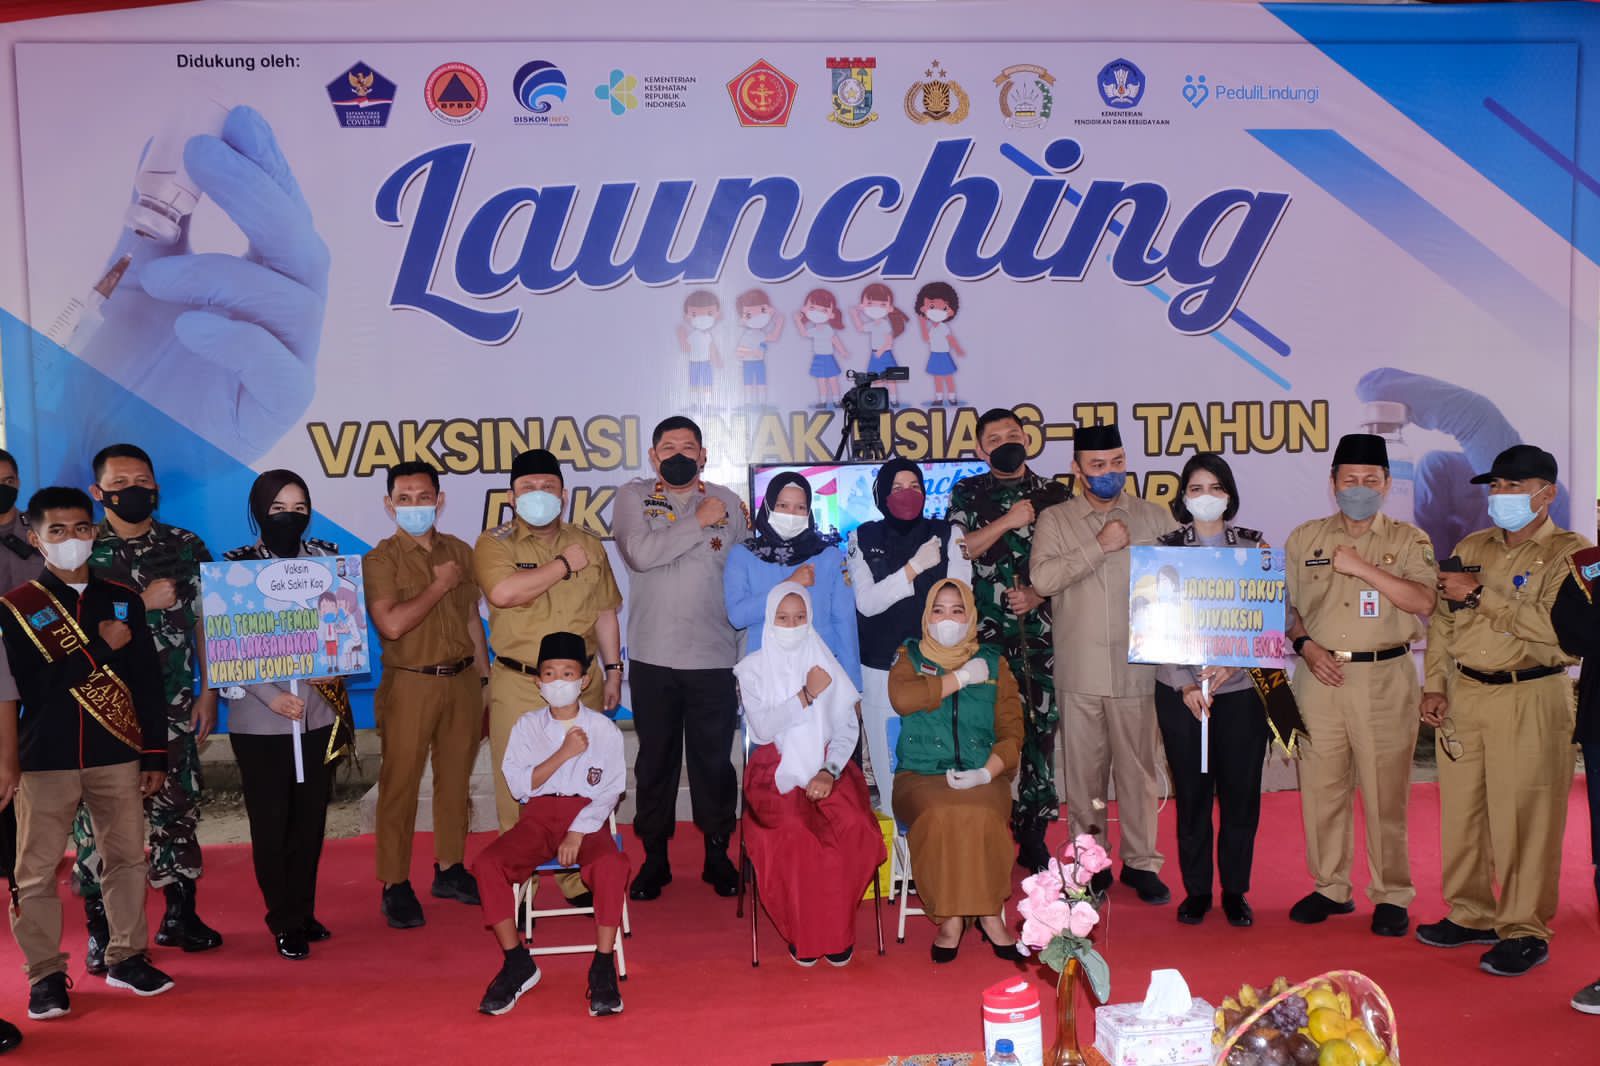 Wakapolda Riau Pada Launching Vaksinasi Anak Usia 6-11 Tahun, “Tumbuhkan Herd Immunity”